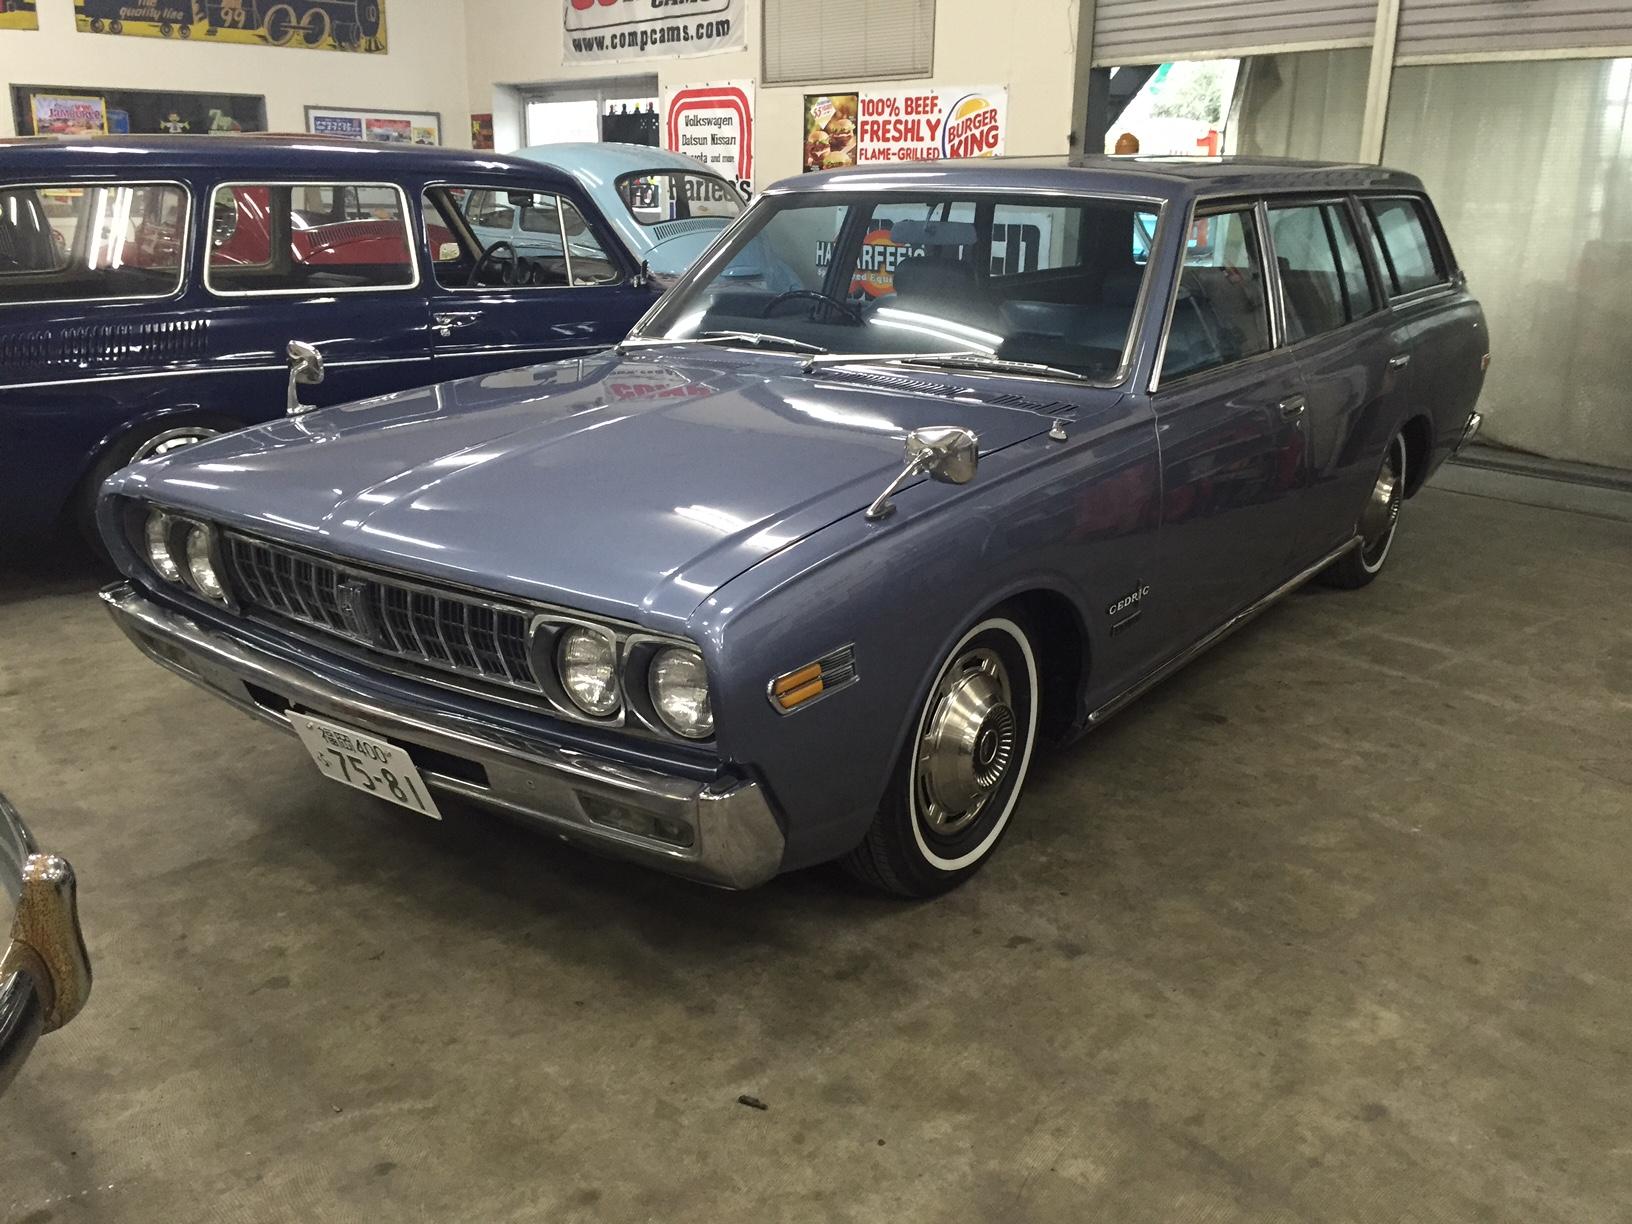 1973年 230セドリックバン Car For Sale 旧車 レストアなら九州 福岡のharfee S